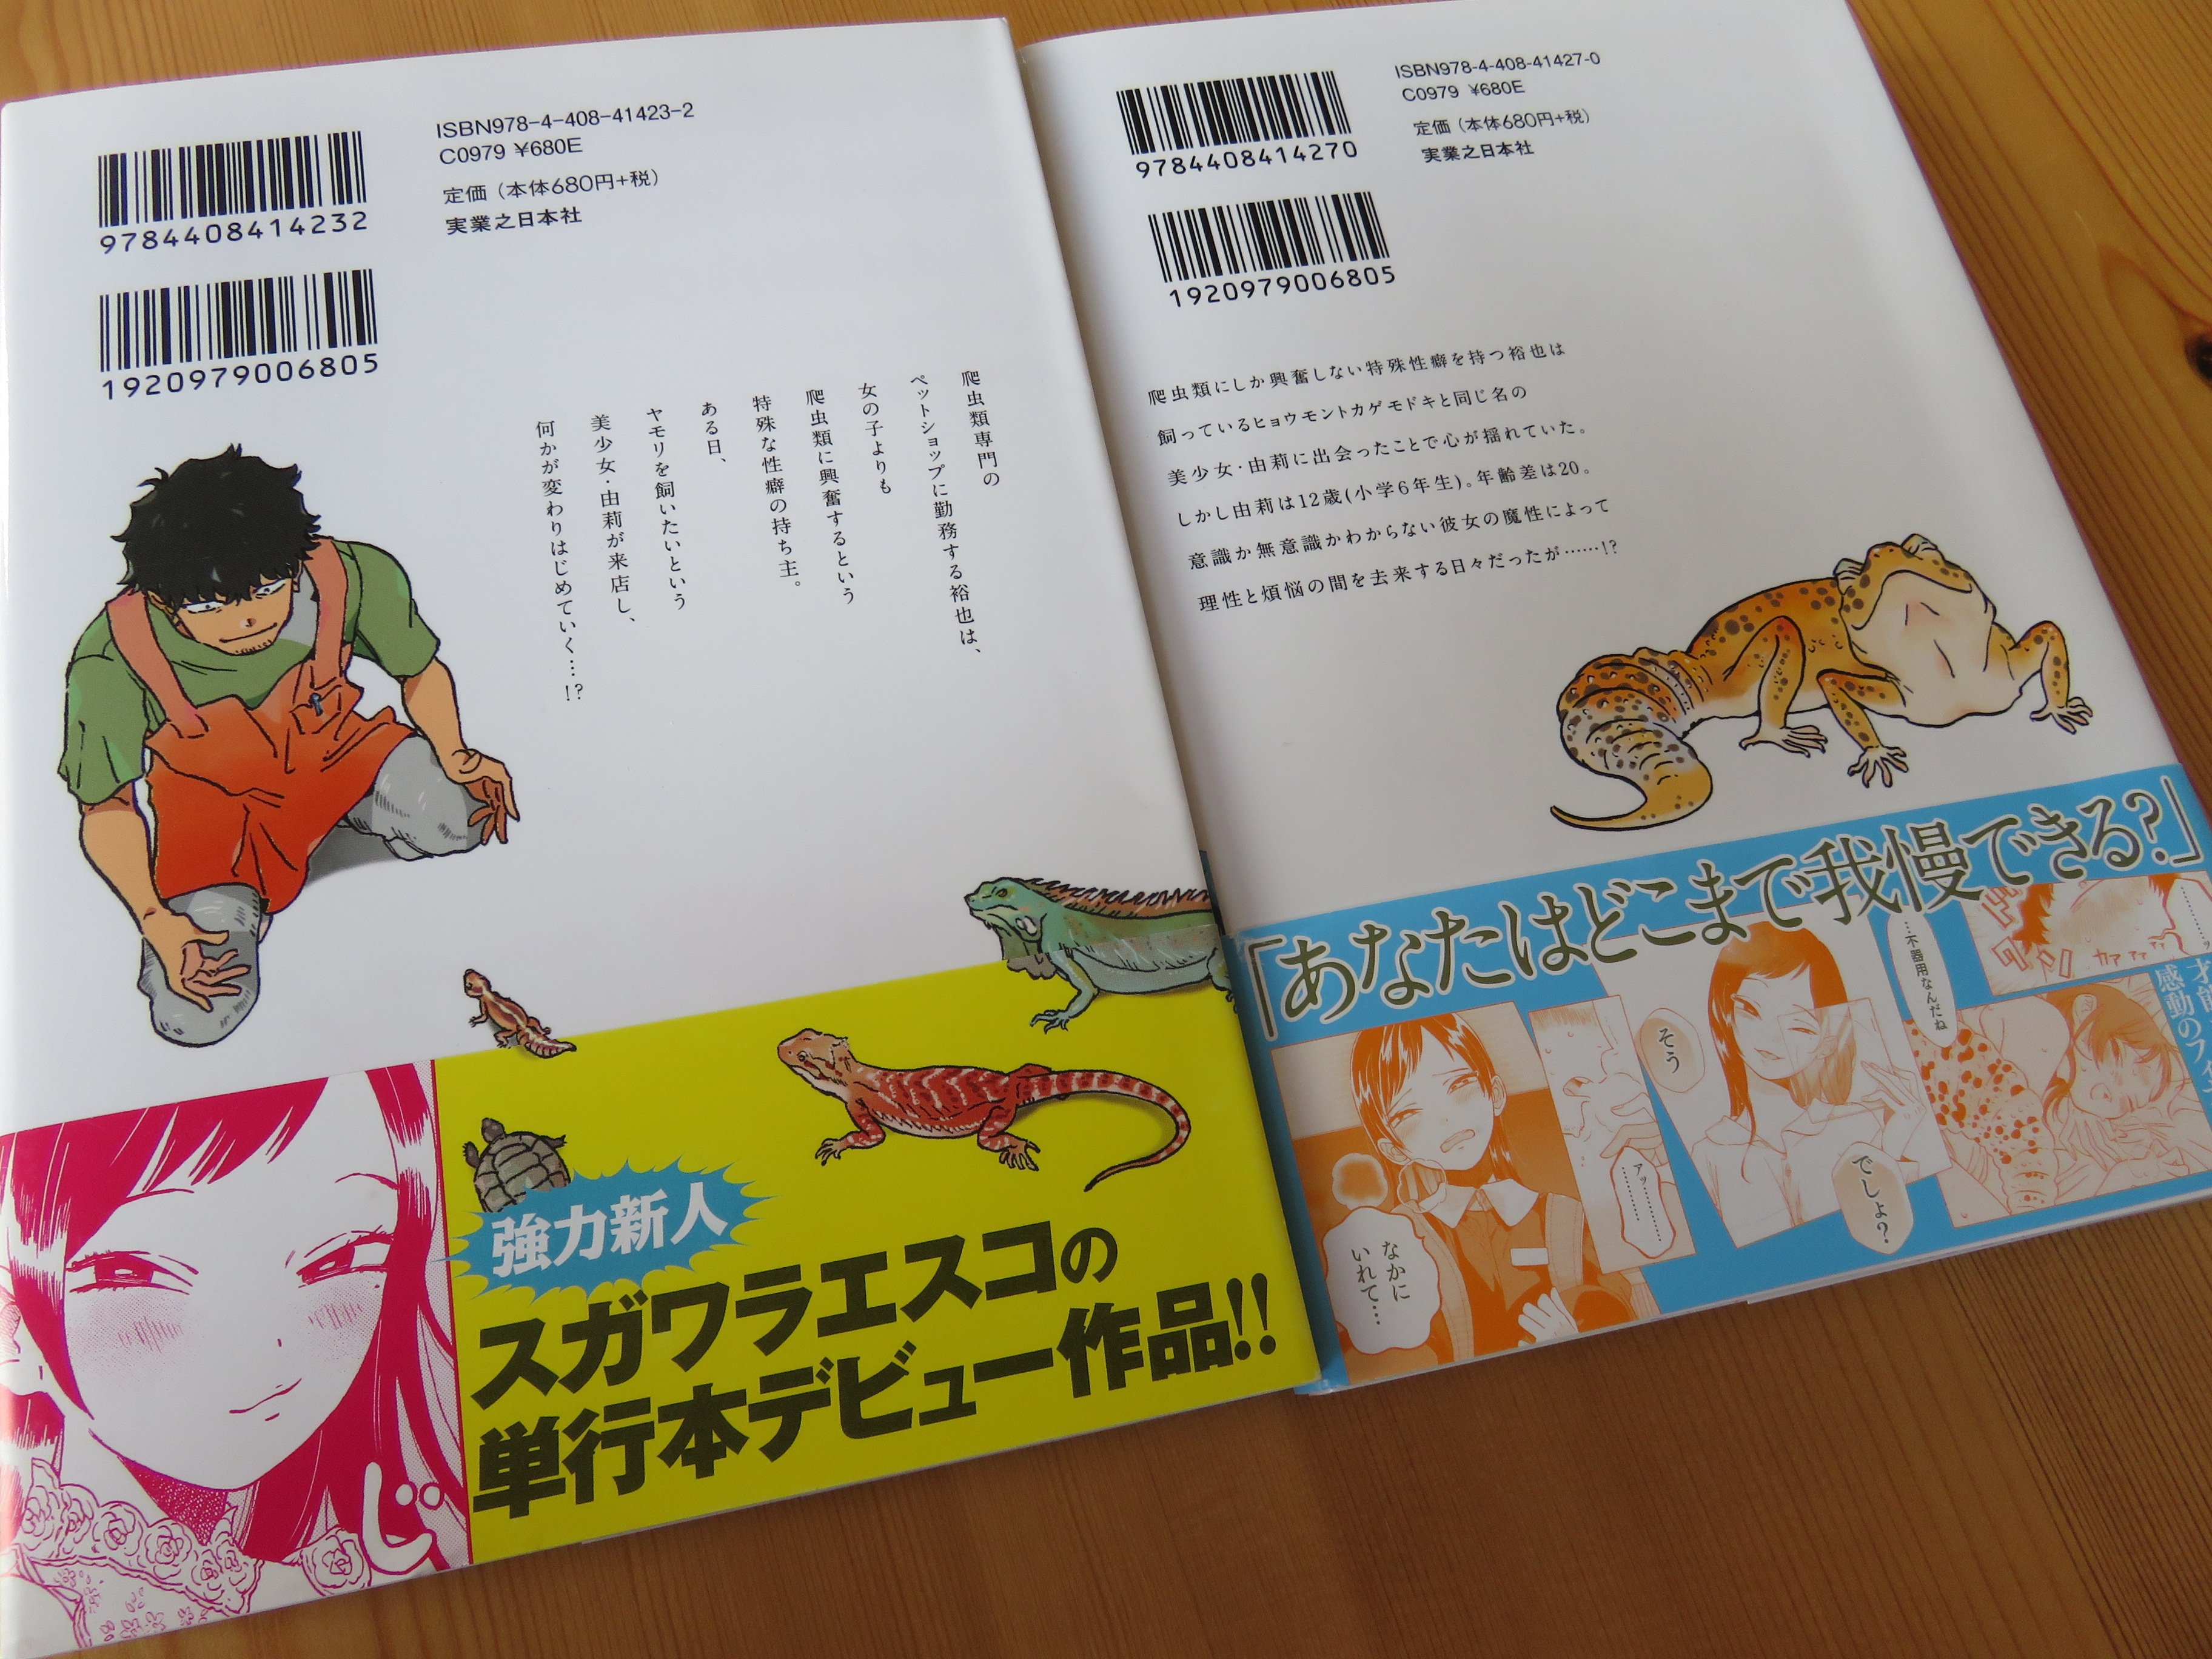 Izu Stomi スガワラ エスコさんの マドンナはガラスケースの中 2巻完結の爬虫類 ラブコメにちょっぴりロリが入った異色作 かなりドキッとするシーンや台詞もありますが 基本はピュアです 個人的にすごく画が好みでストーリーも面白かった 願わくば